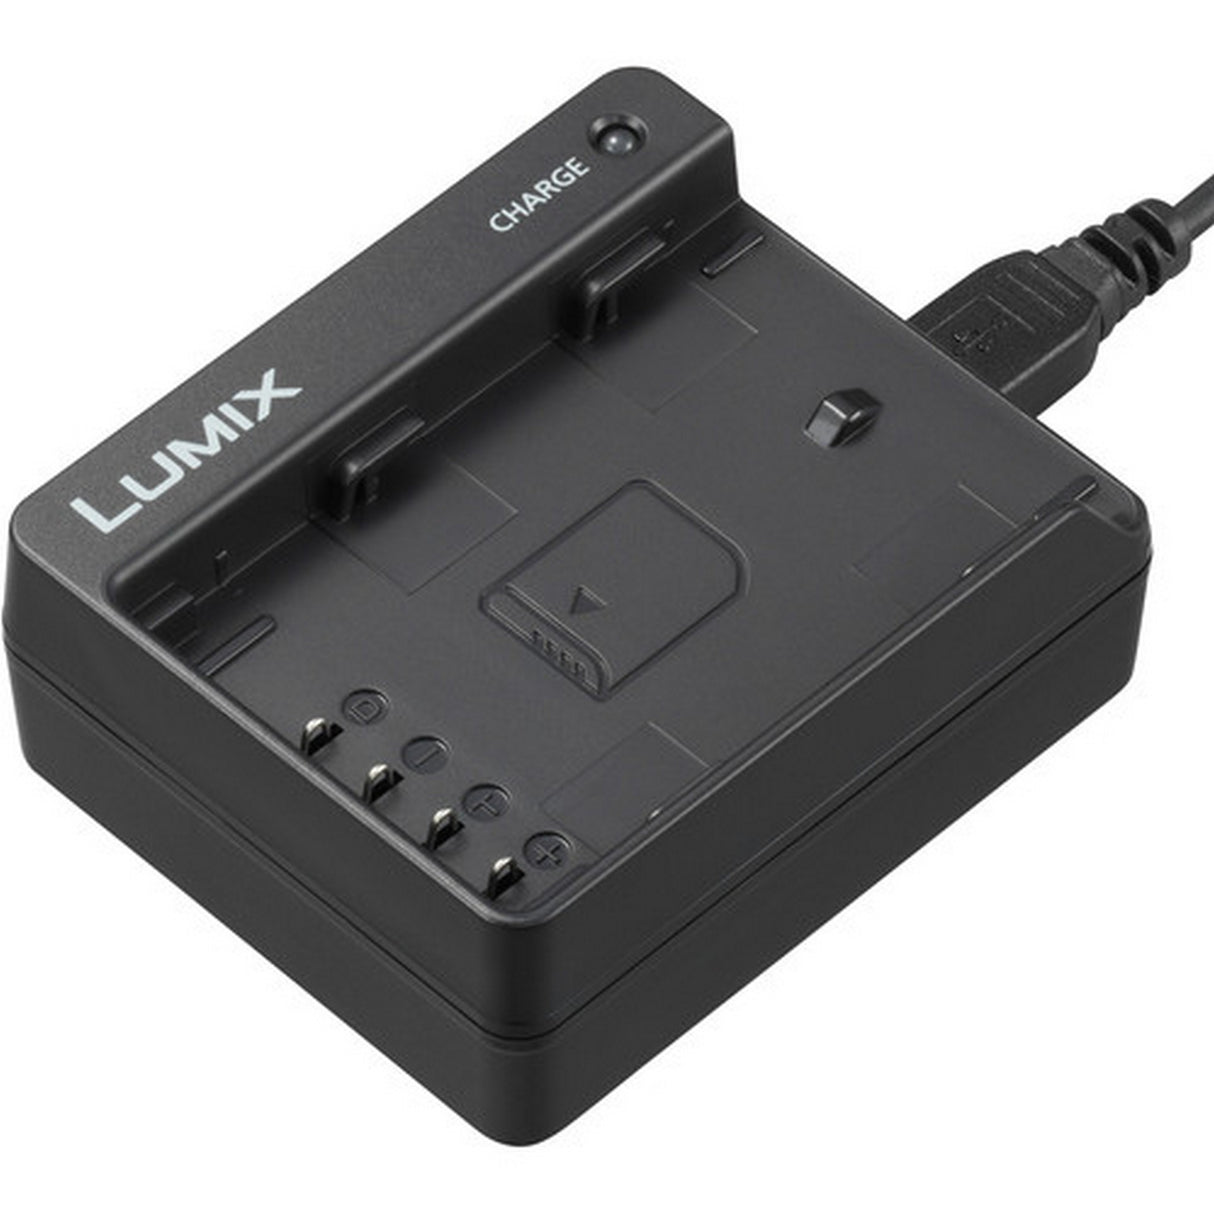 Panasonic LUMIX DMW-BTC13 Battery Charger